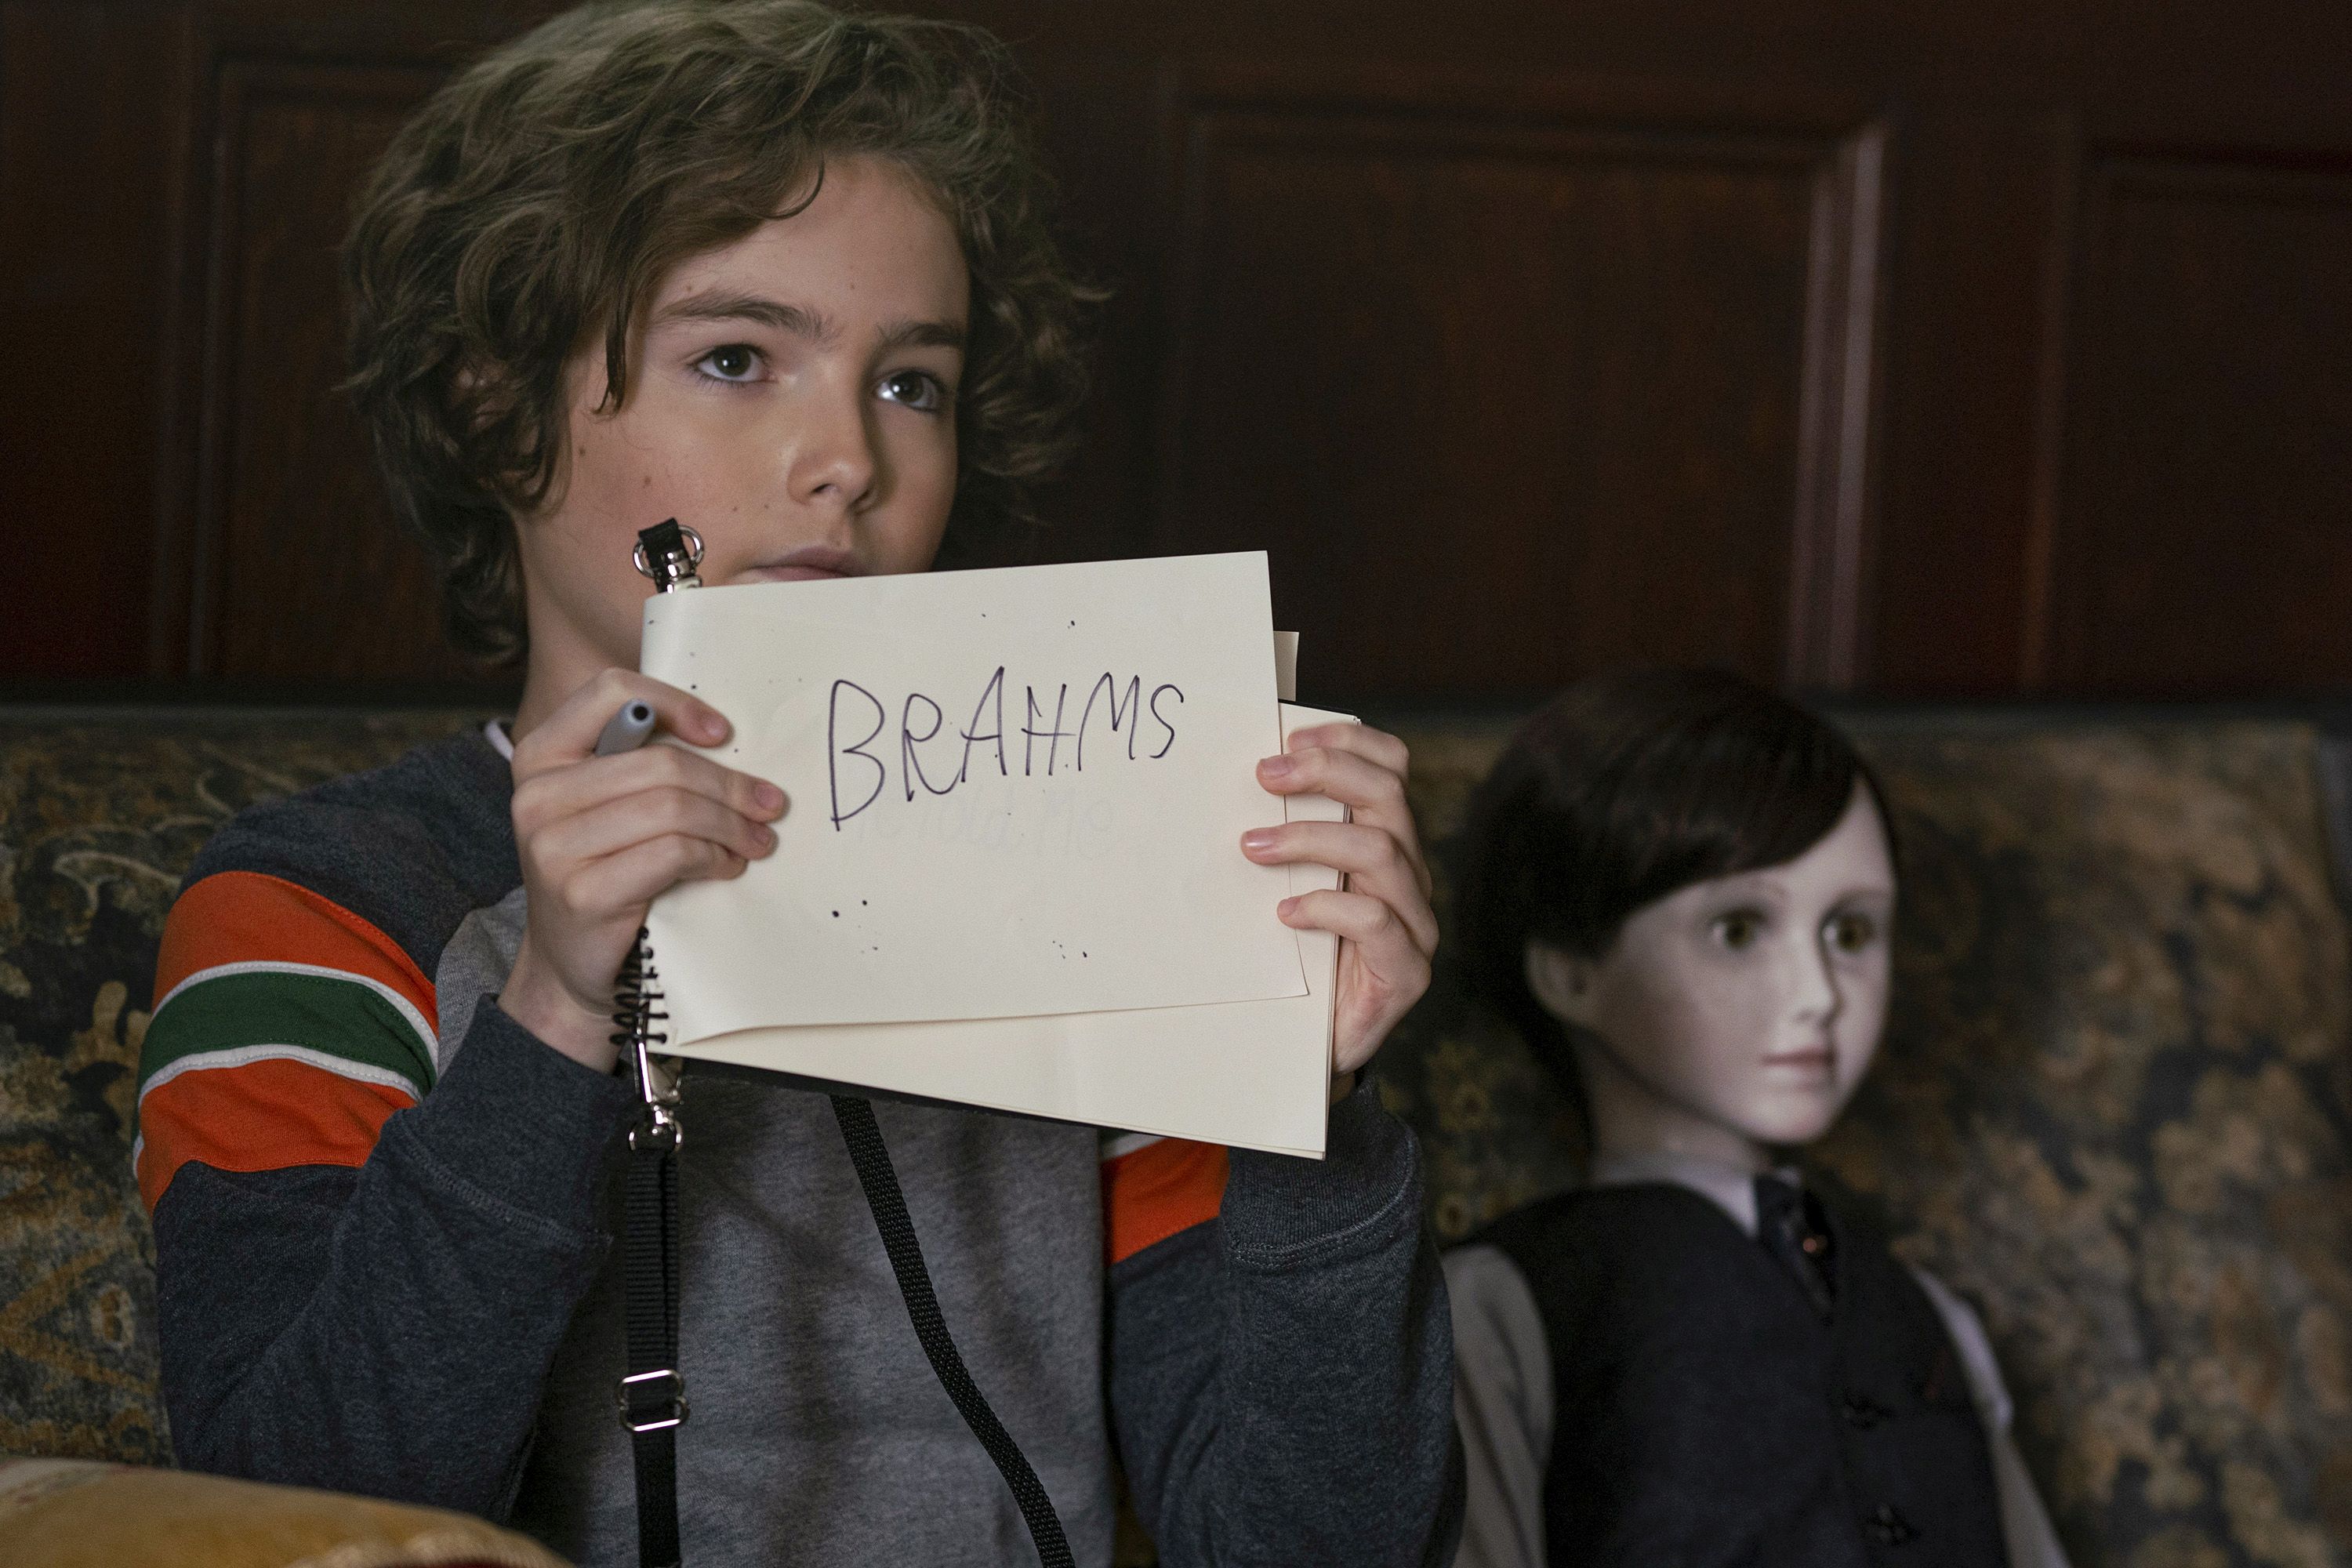 Brahms: The Boy II (4K UHD)